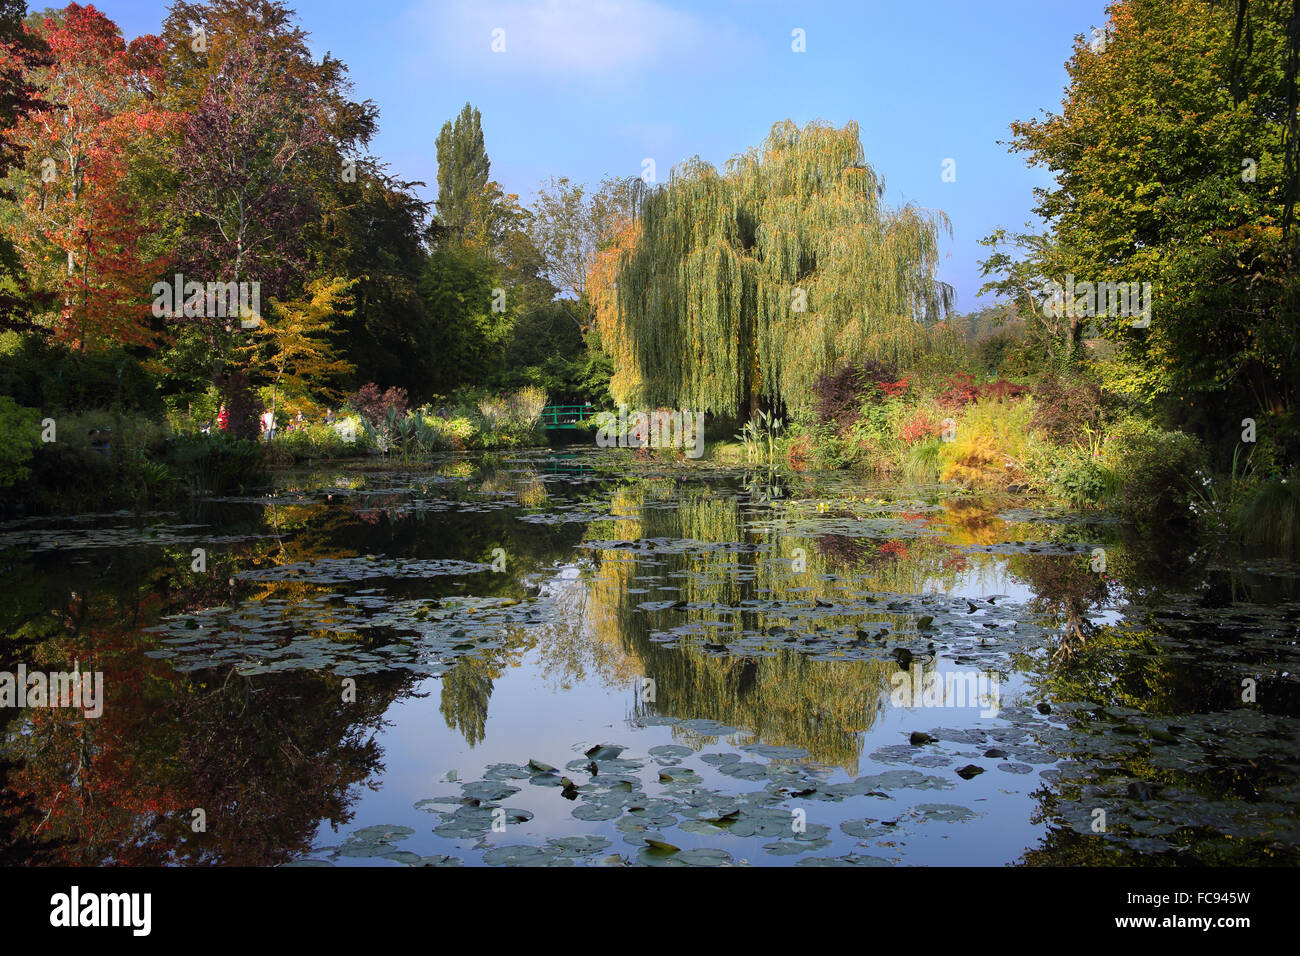 Jardin d'eau de Claude Monet à Giverny, octobre, Normandie, France, Europe Banque D'Images